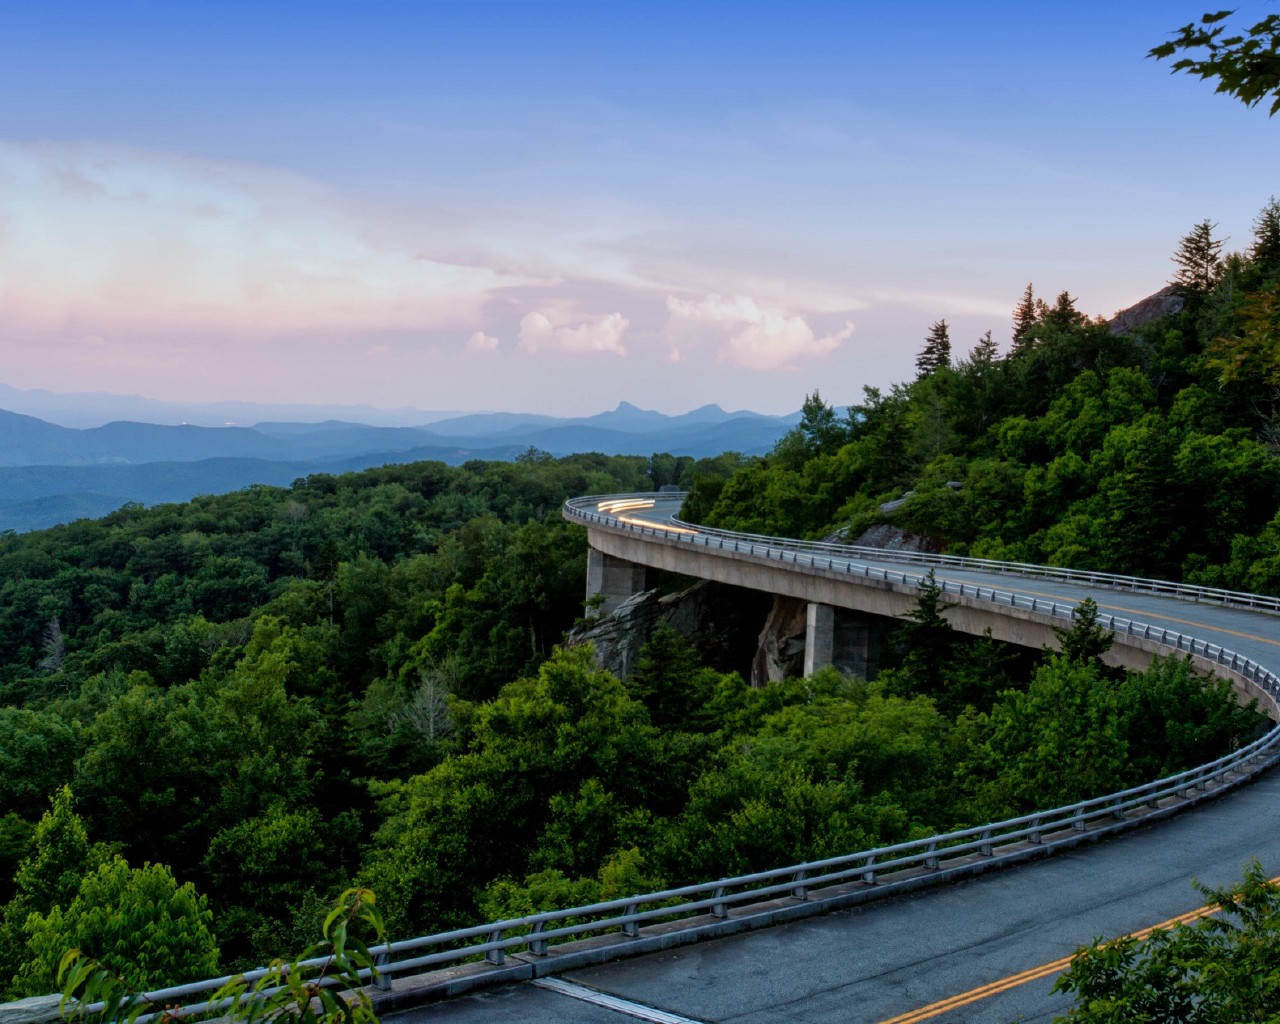  Blue Ridge Parkway Appalachian Mountains Wallpaper 73045 1280x1024